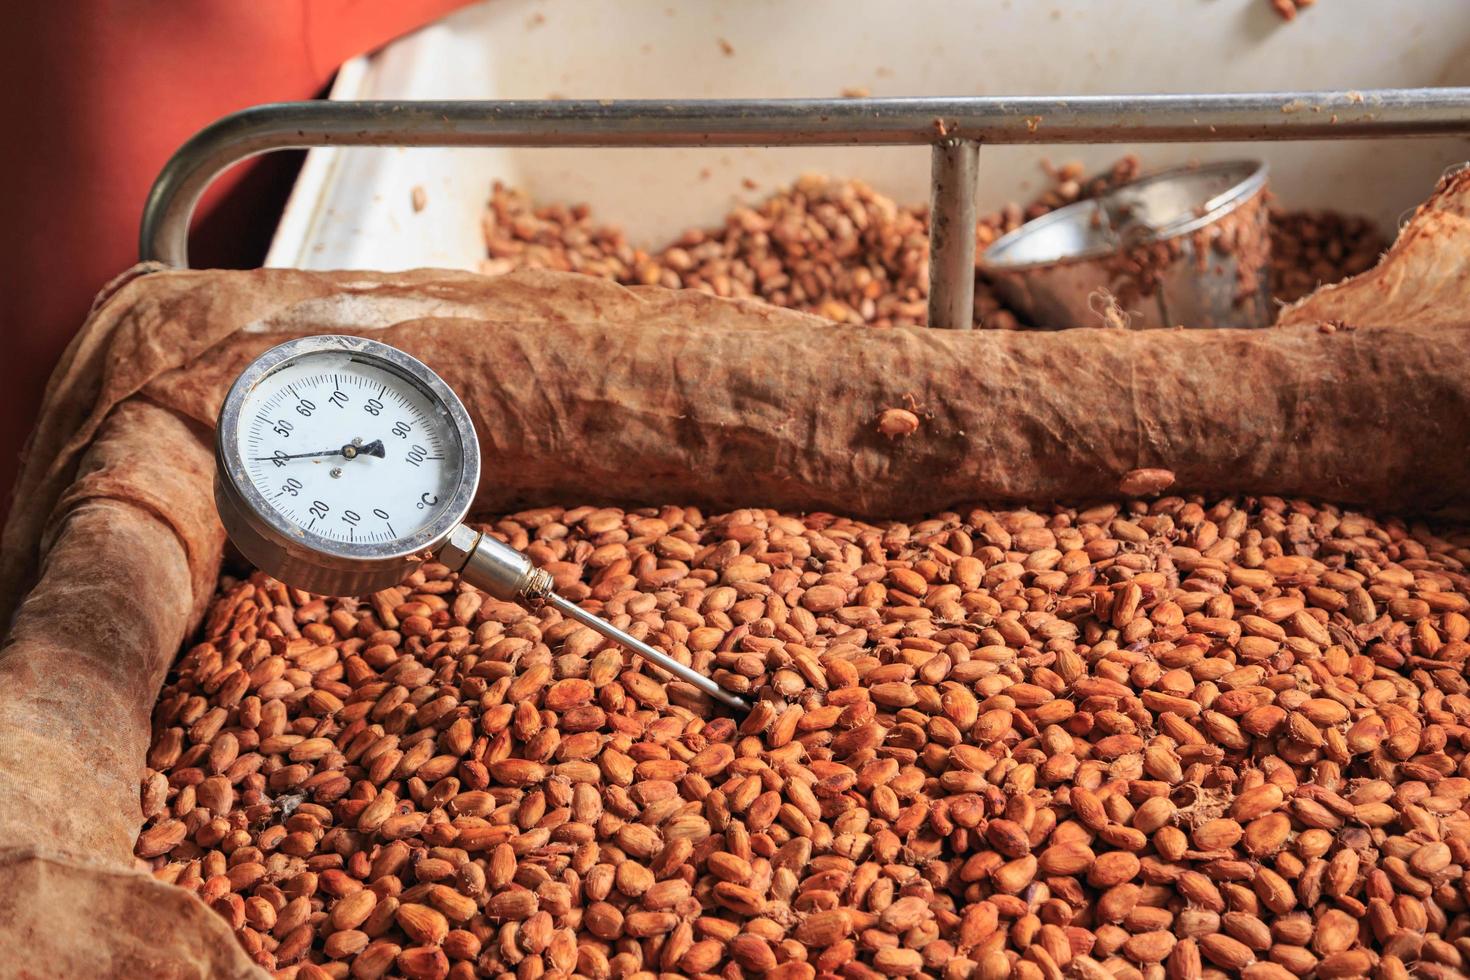 mesurer la température des fèves de cacao fermentées. photo